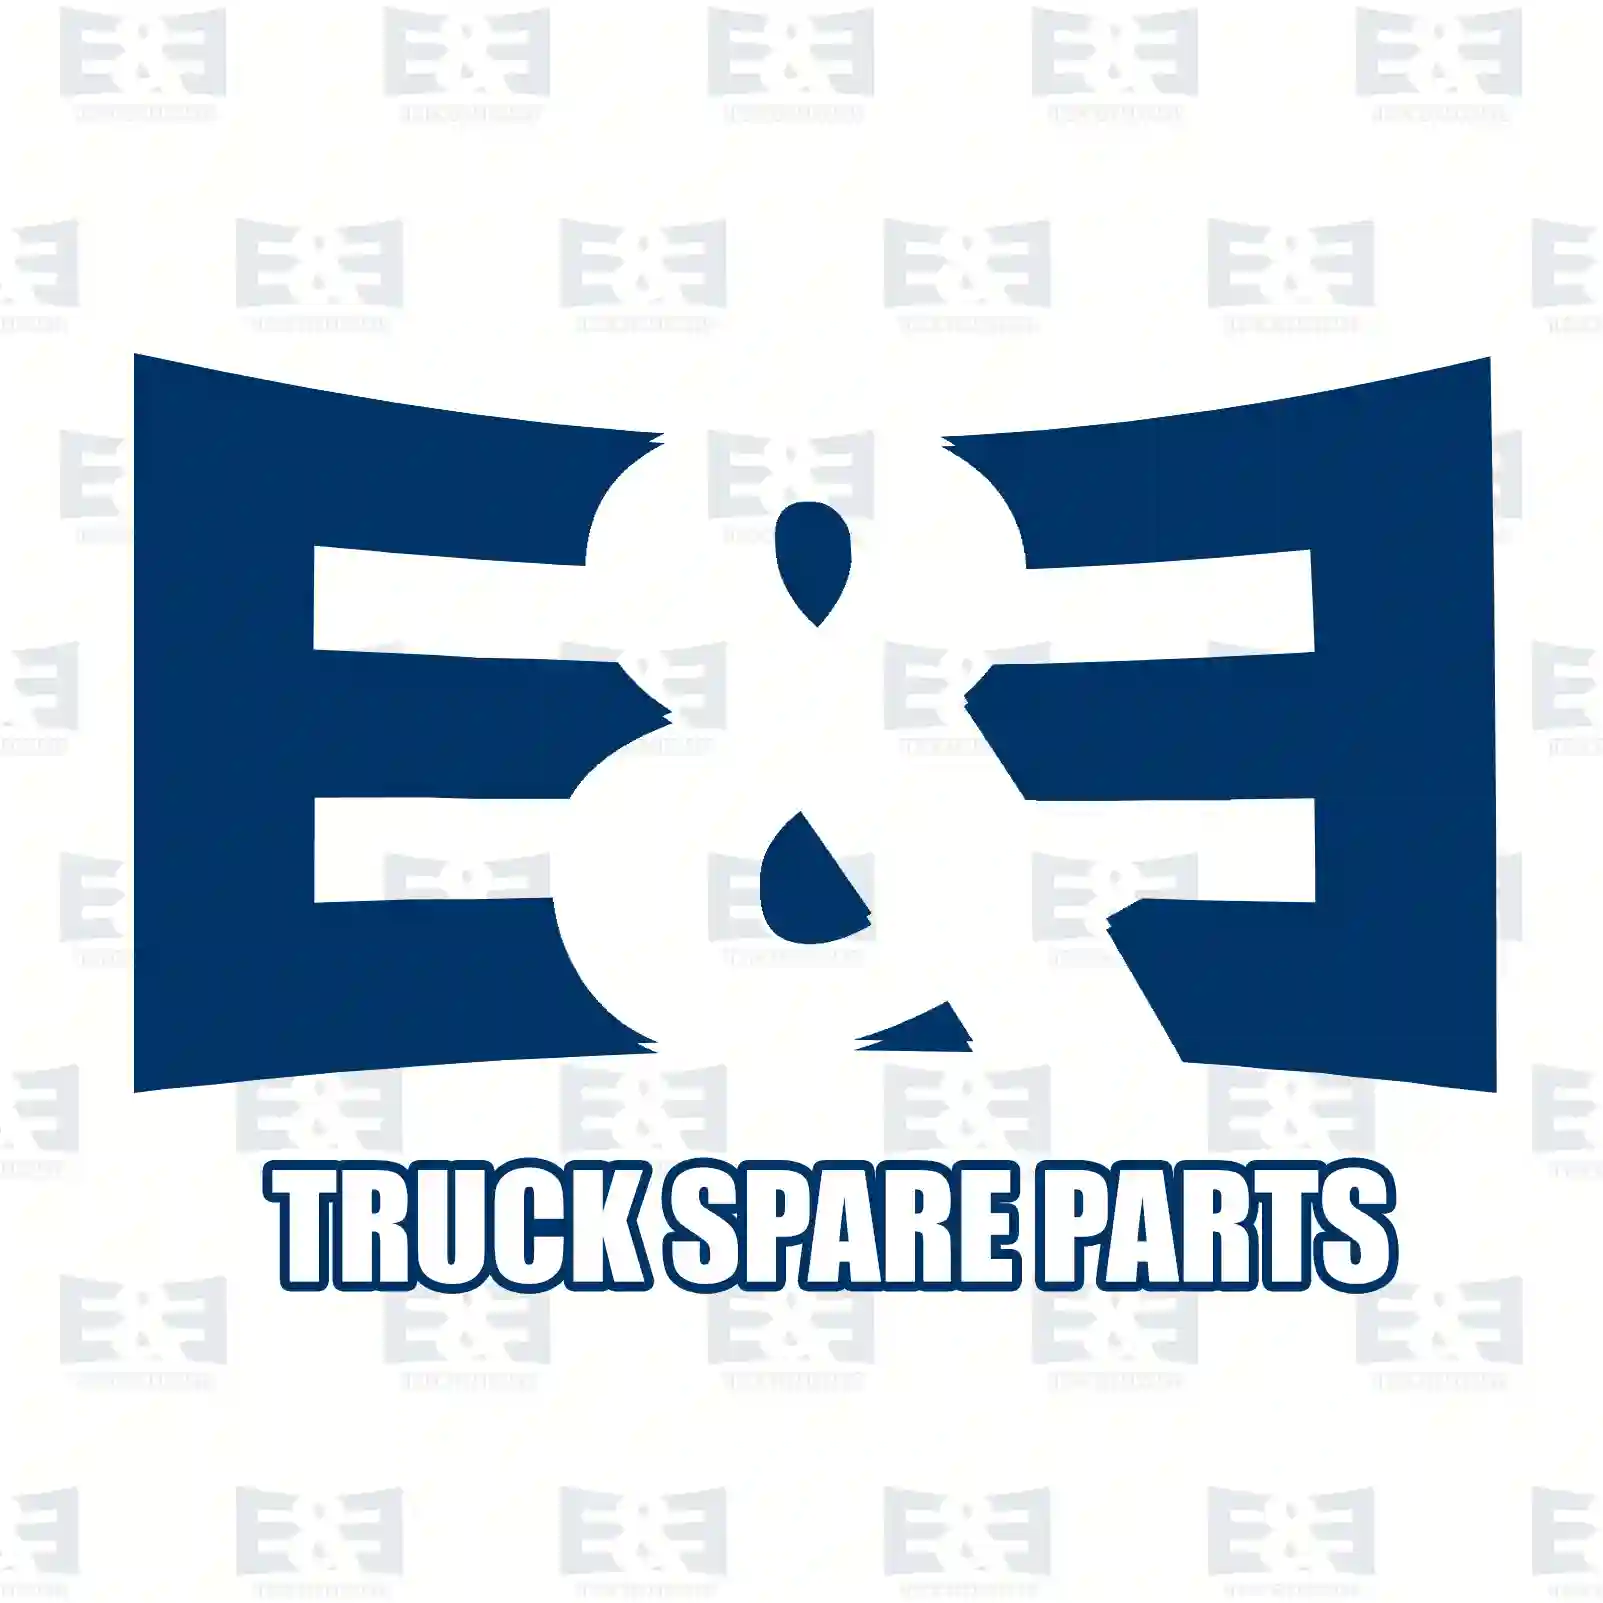  Bleeder valve || E&E Truck Spare Parts | Truck Spare Parts, Auotomotive Spare Parts